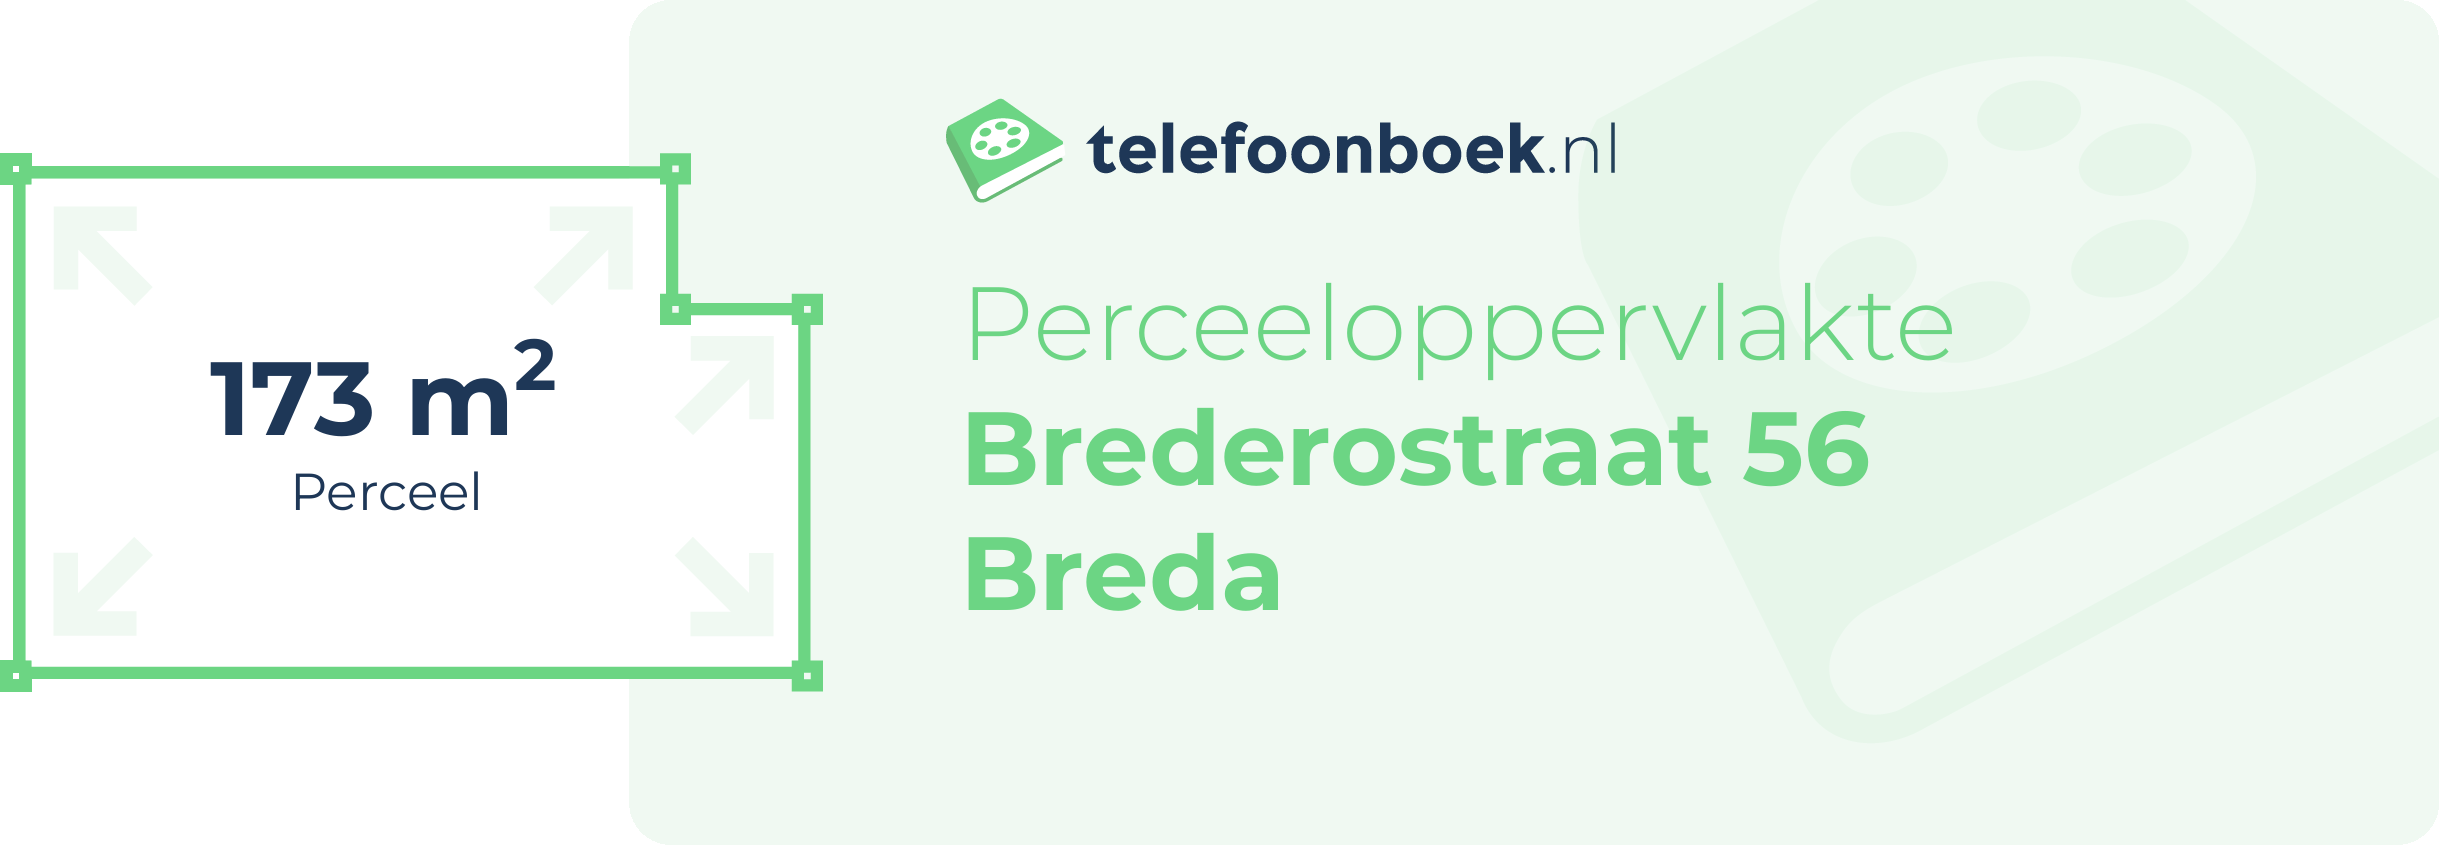 Perceeloppervlakte Brederostraat 56 Breda